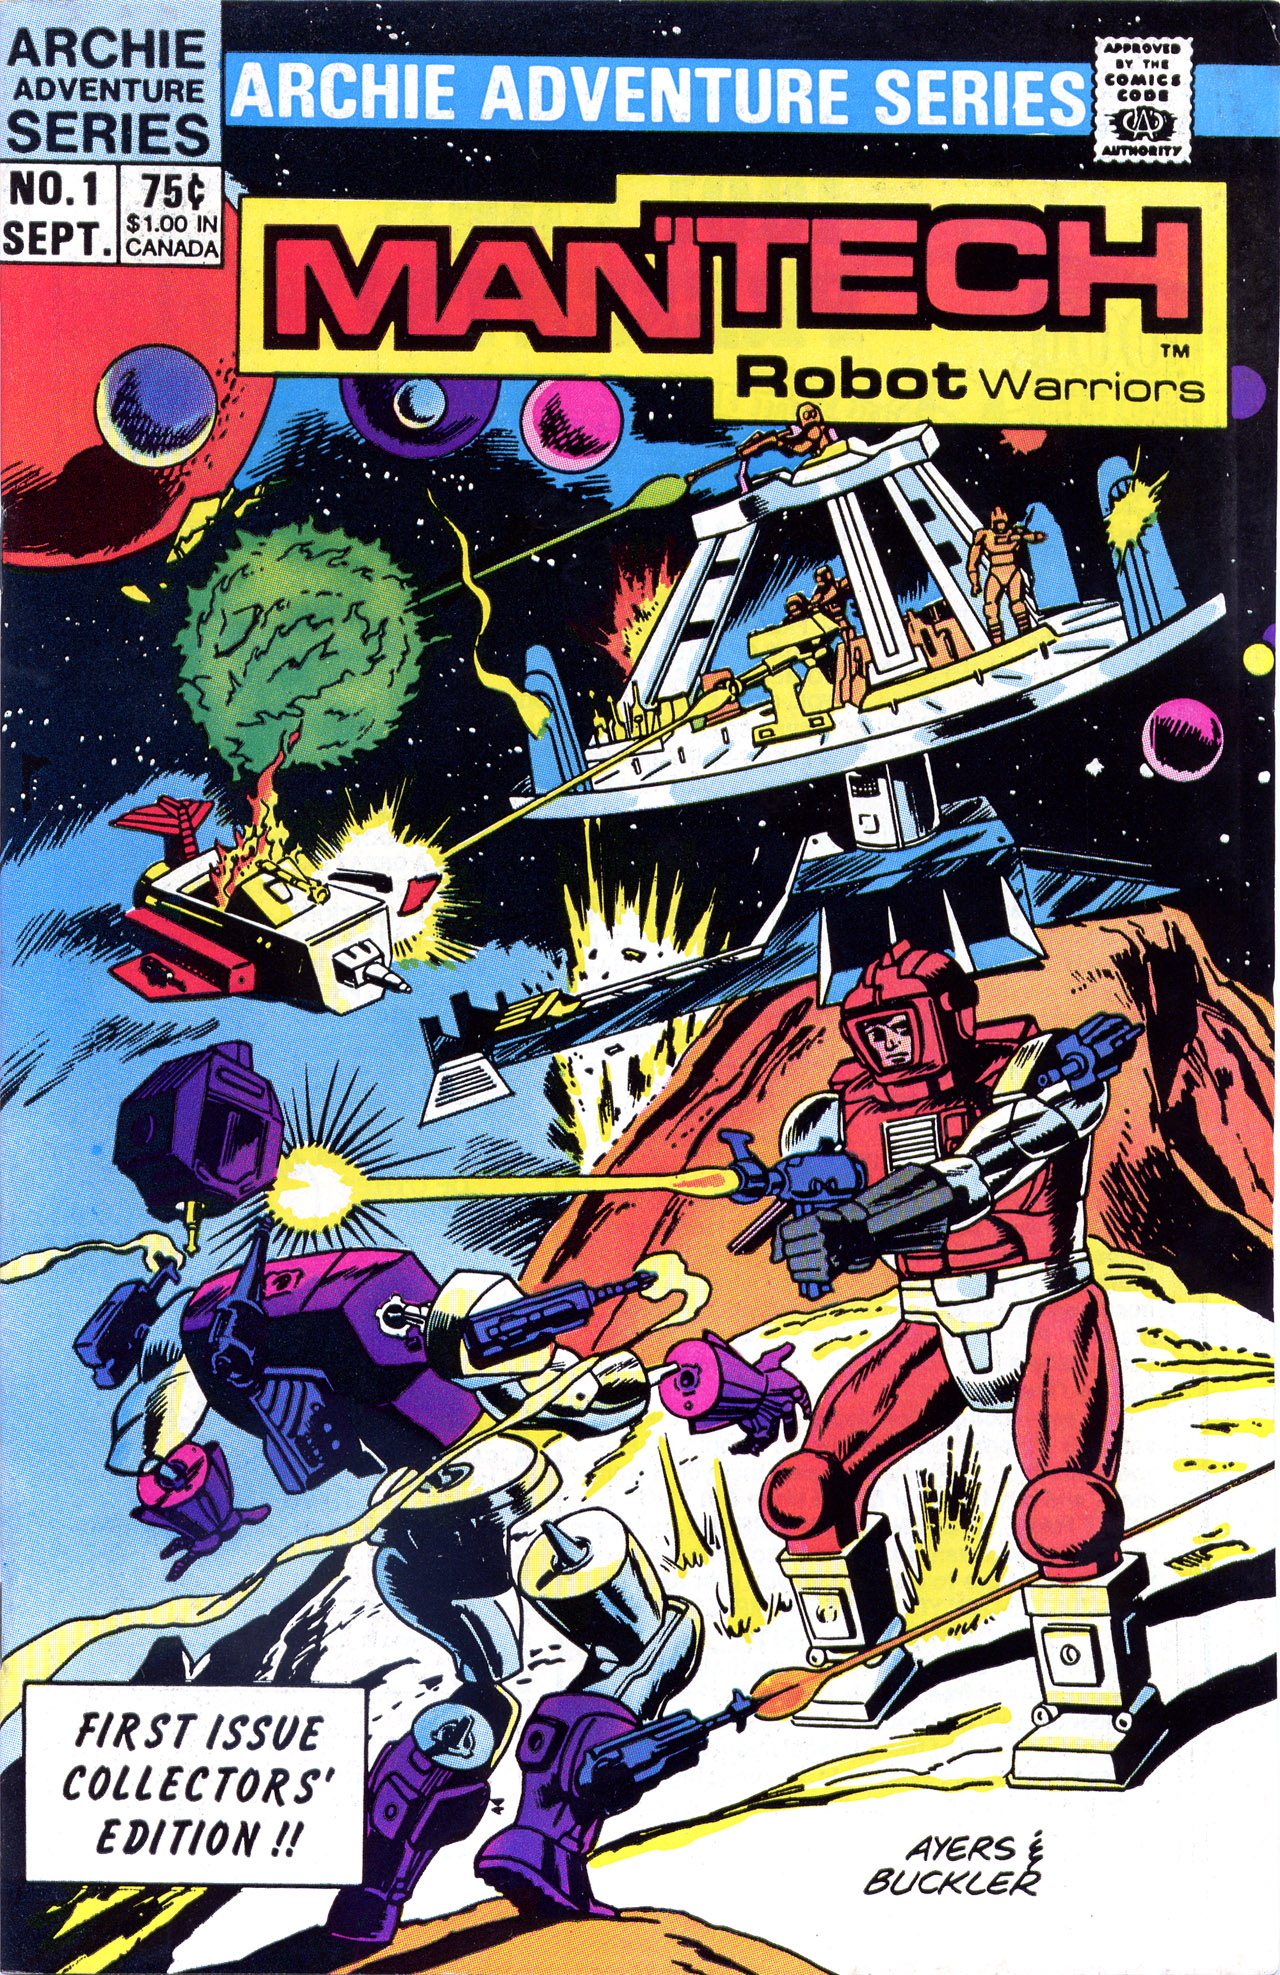 Read online ManTech Robot Warriors comic -  Issue #1 - 1